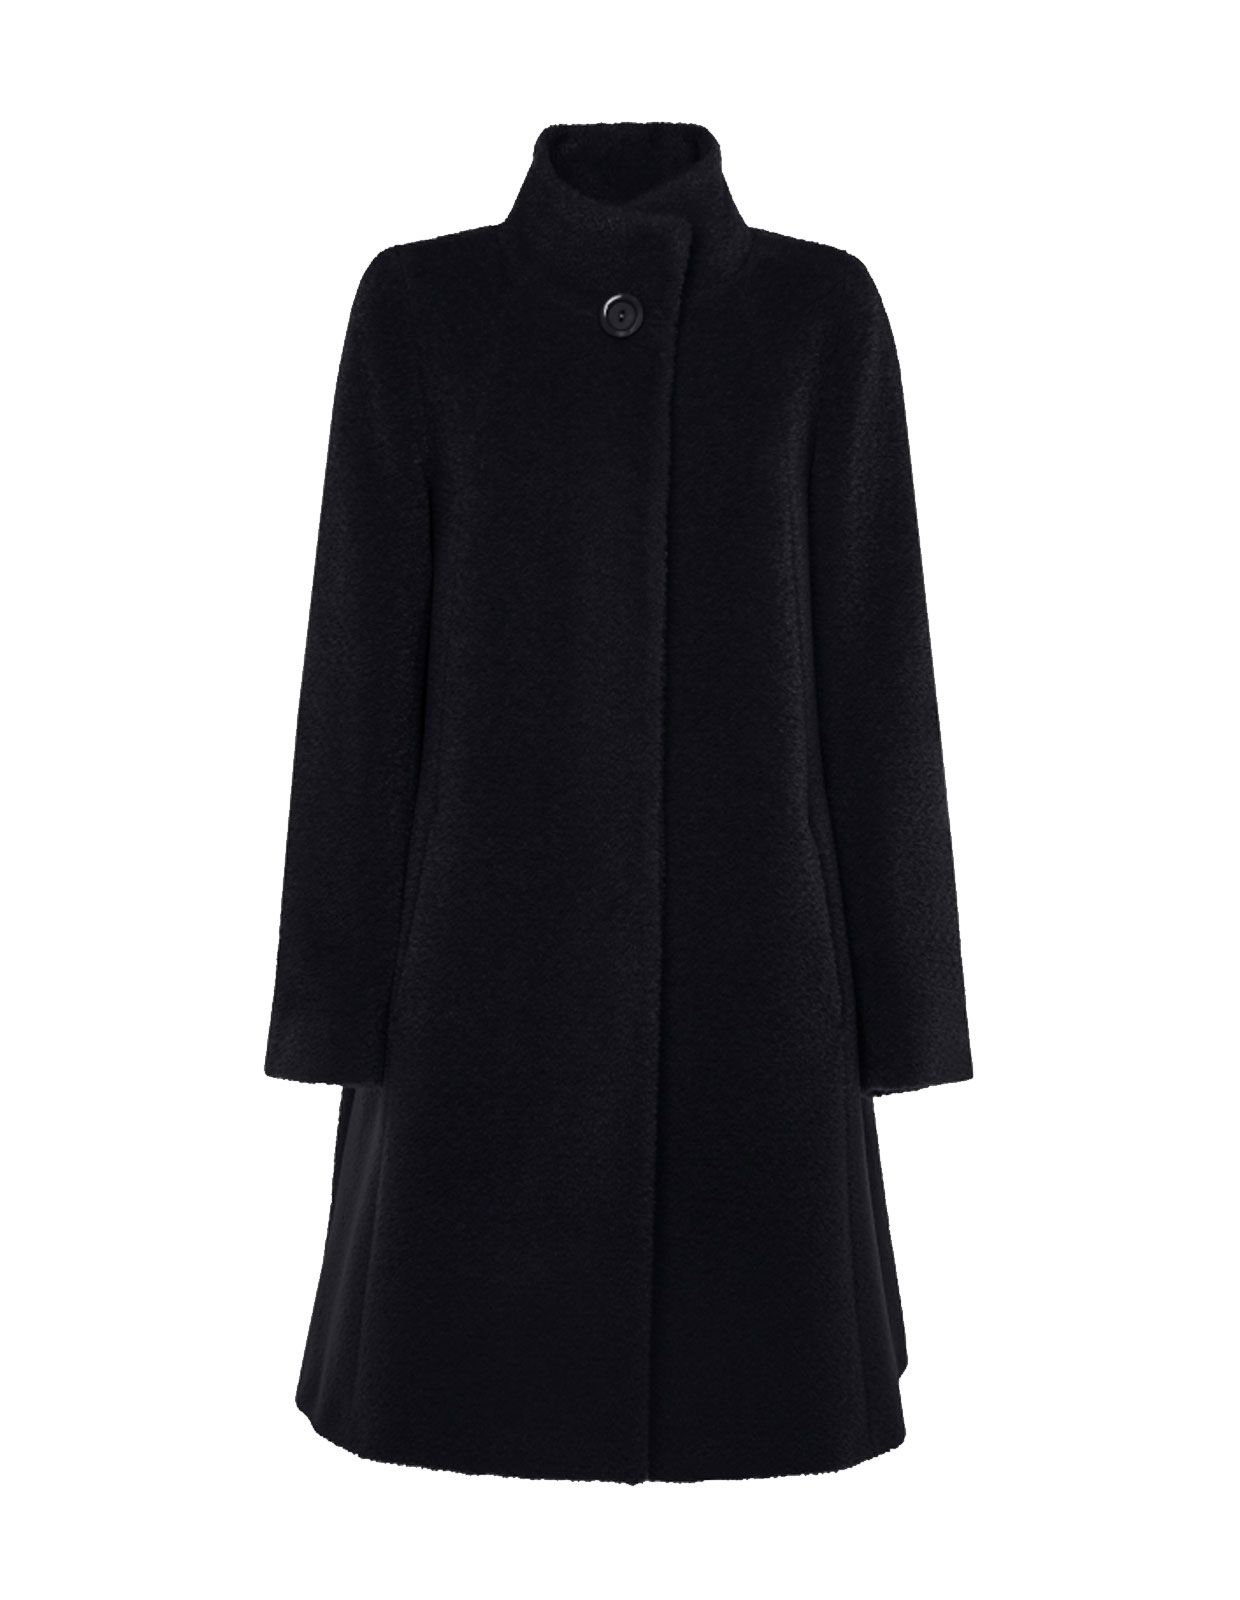 Alpacka A-Line Coat Black